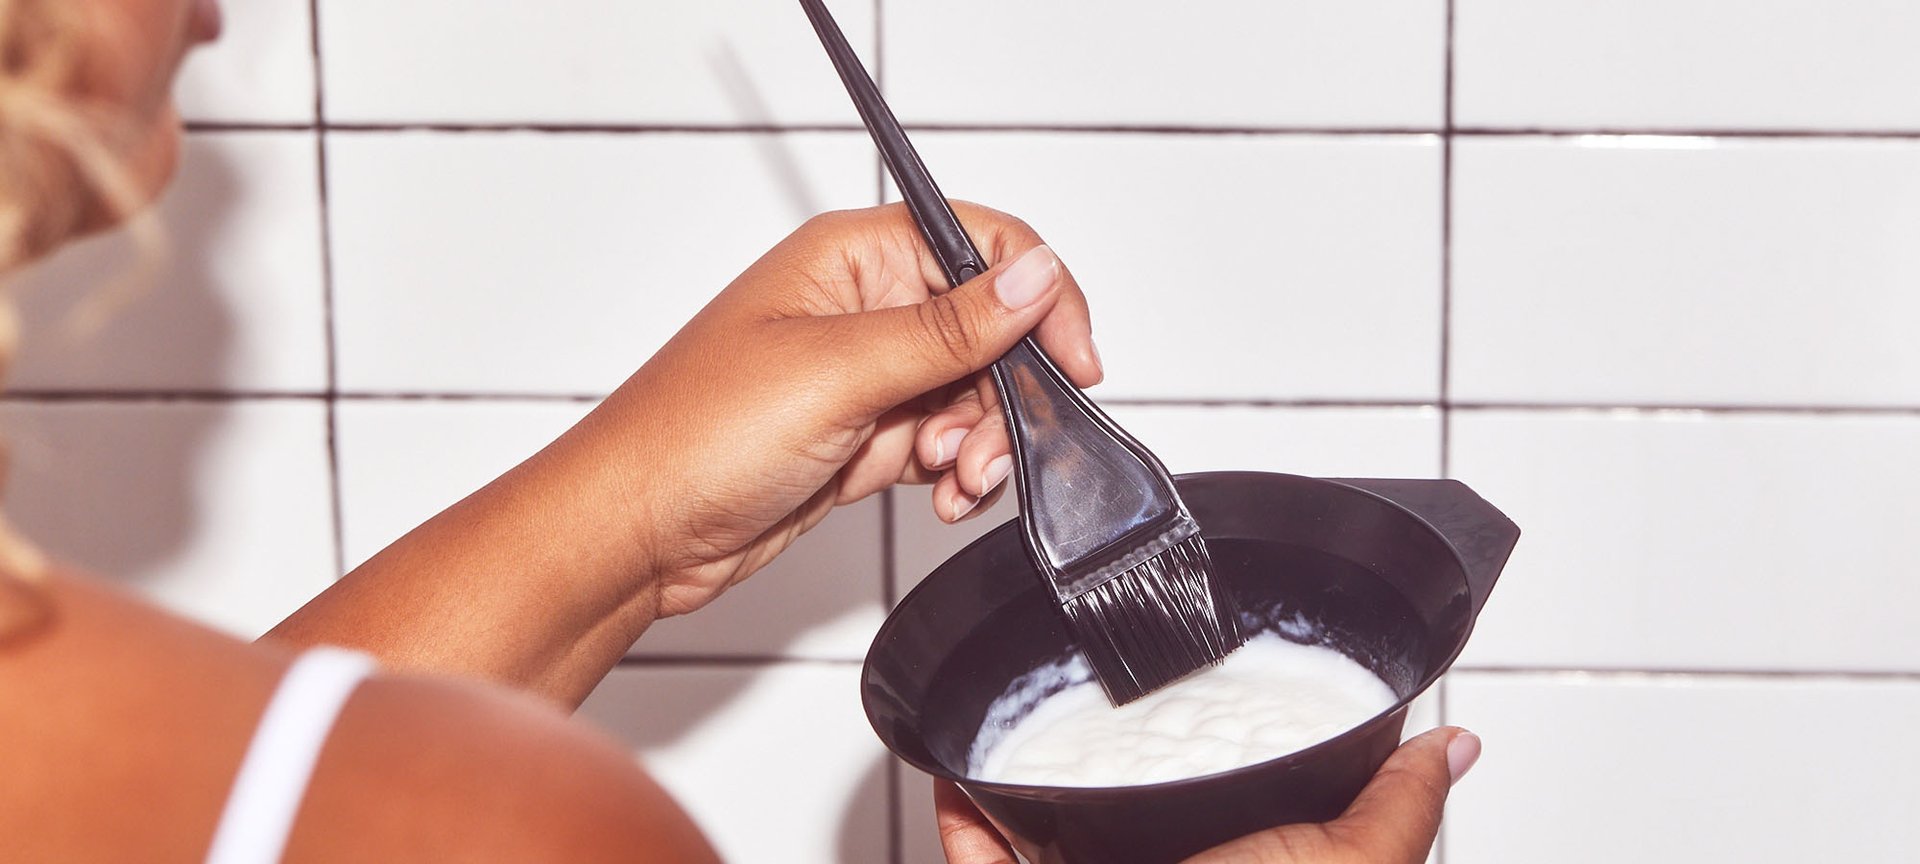 How to Bleach Hair at Home - L'Oréal Paris